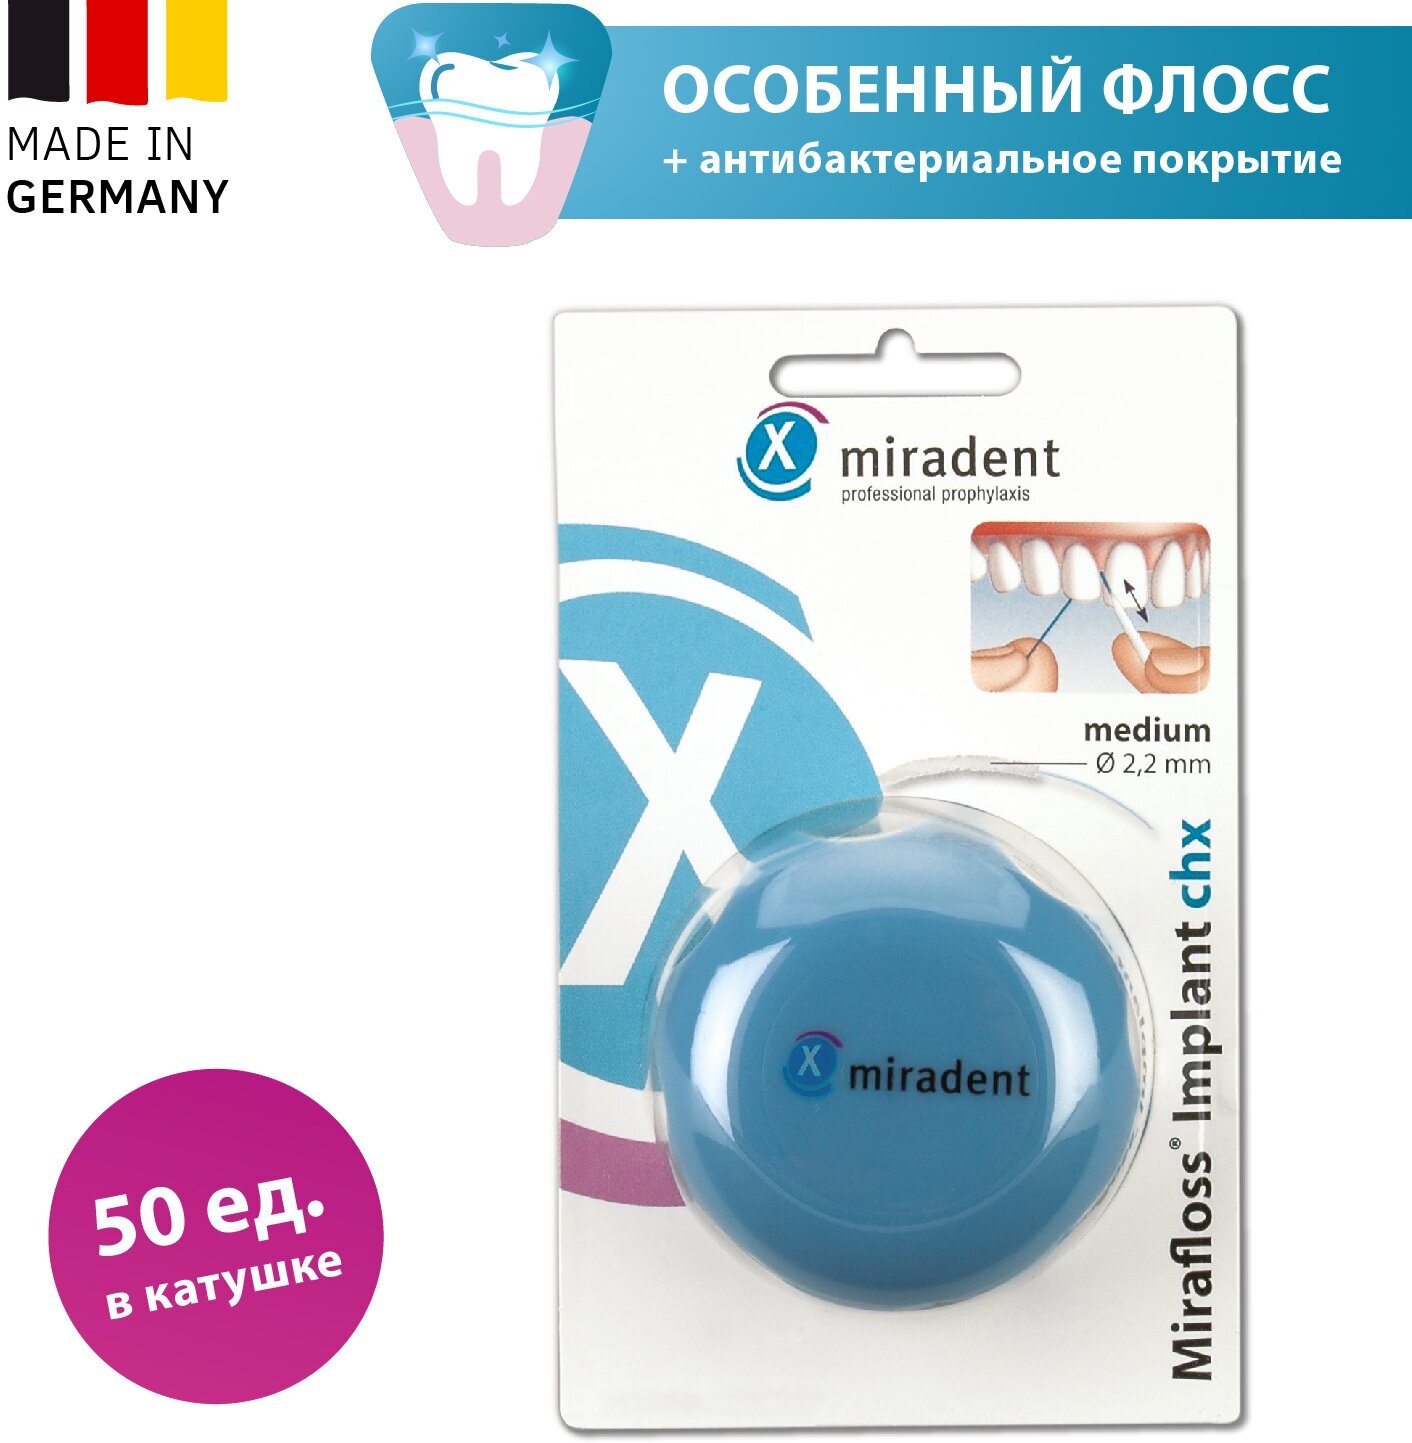 Зубная нить miradent - фото №10